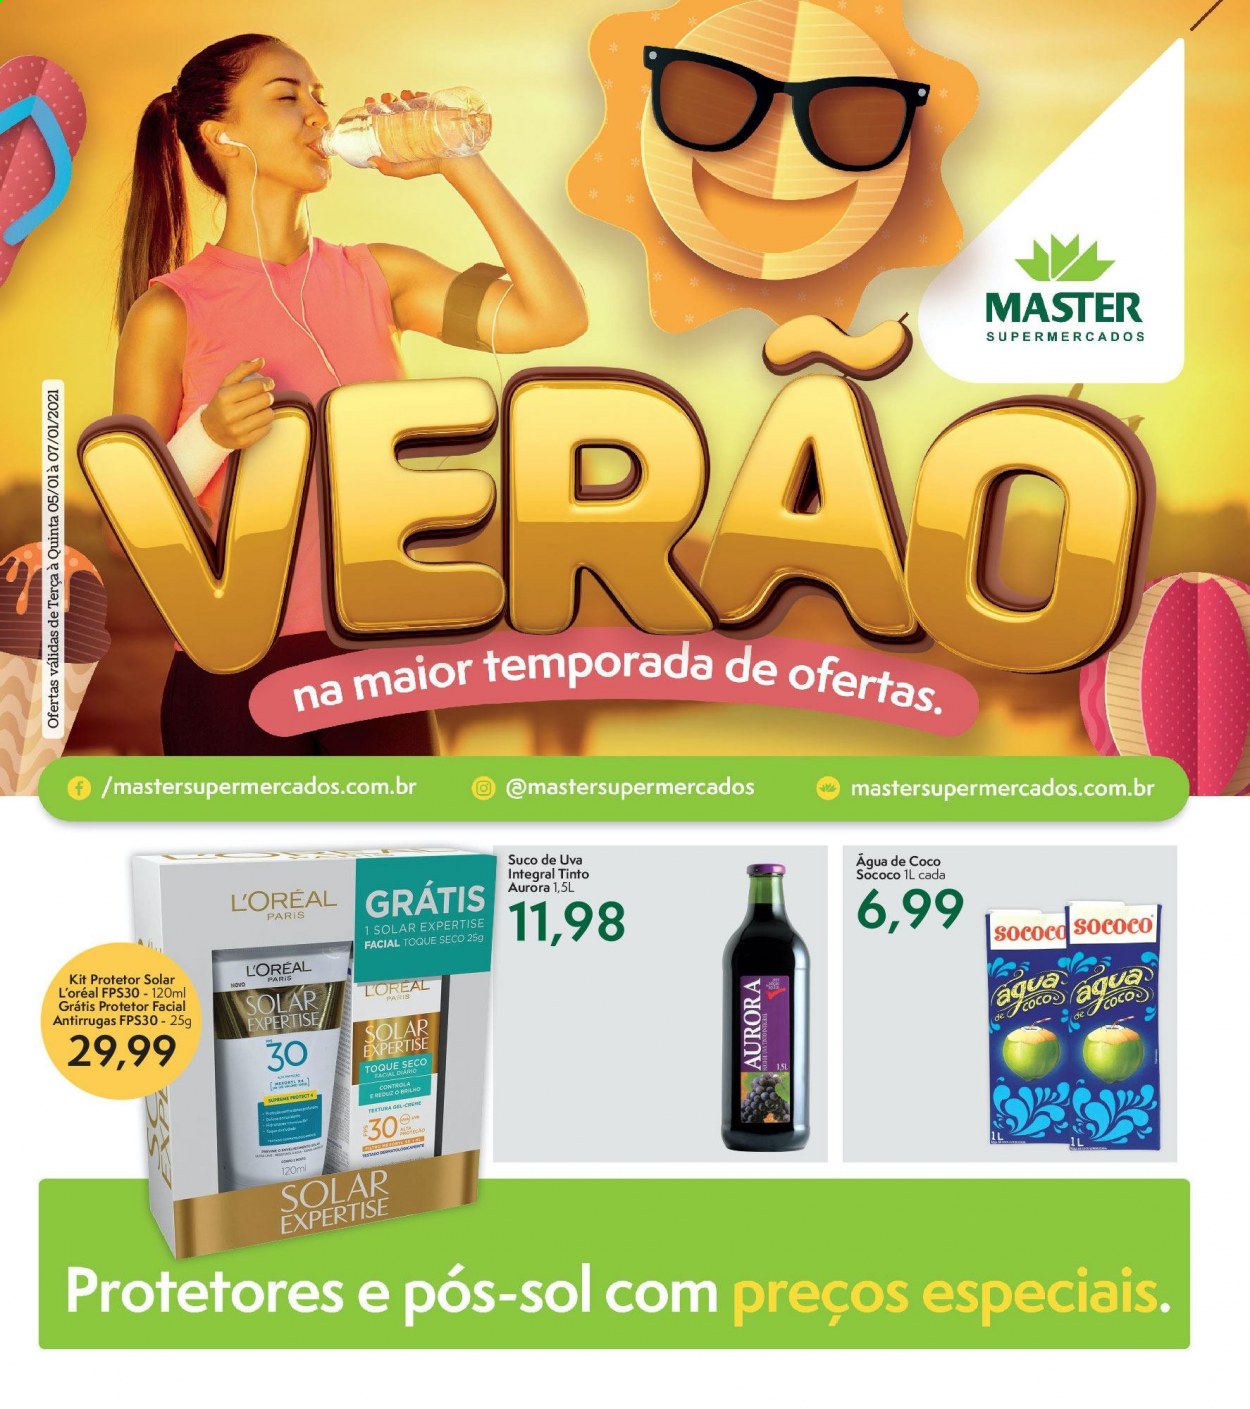 thumbnail - Folheto Master Supermercados - 05/01/2021 - 07/01/2021 - Produtos em promoção - Aurora, suco, suco de uva, L’Oréal, creme solar. Página 1.